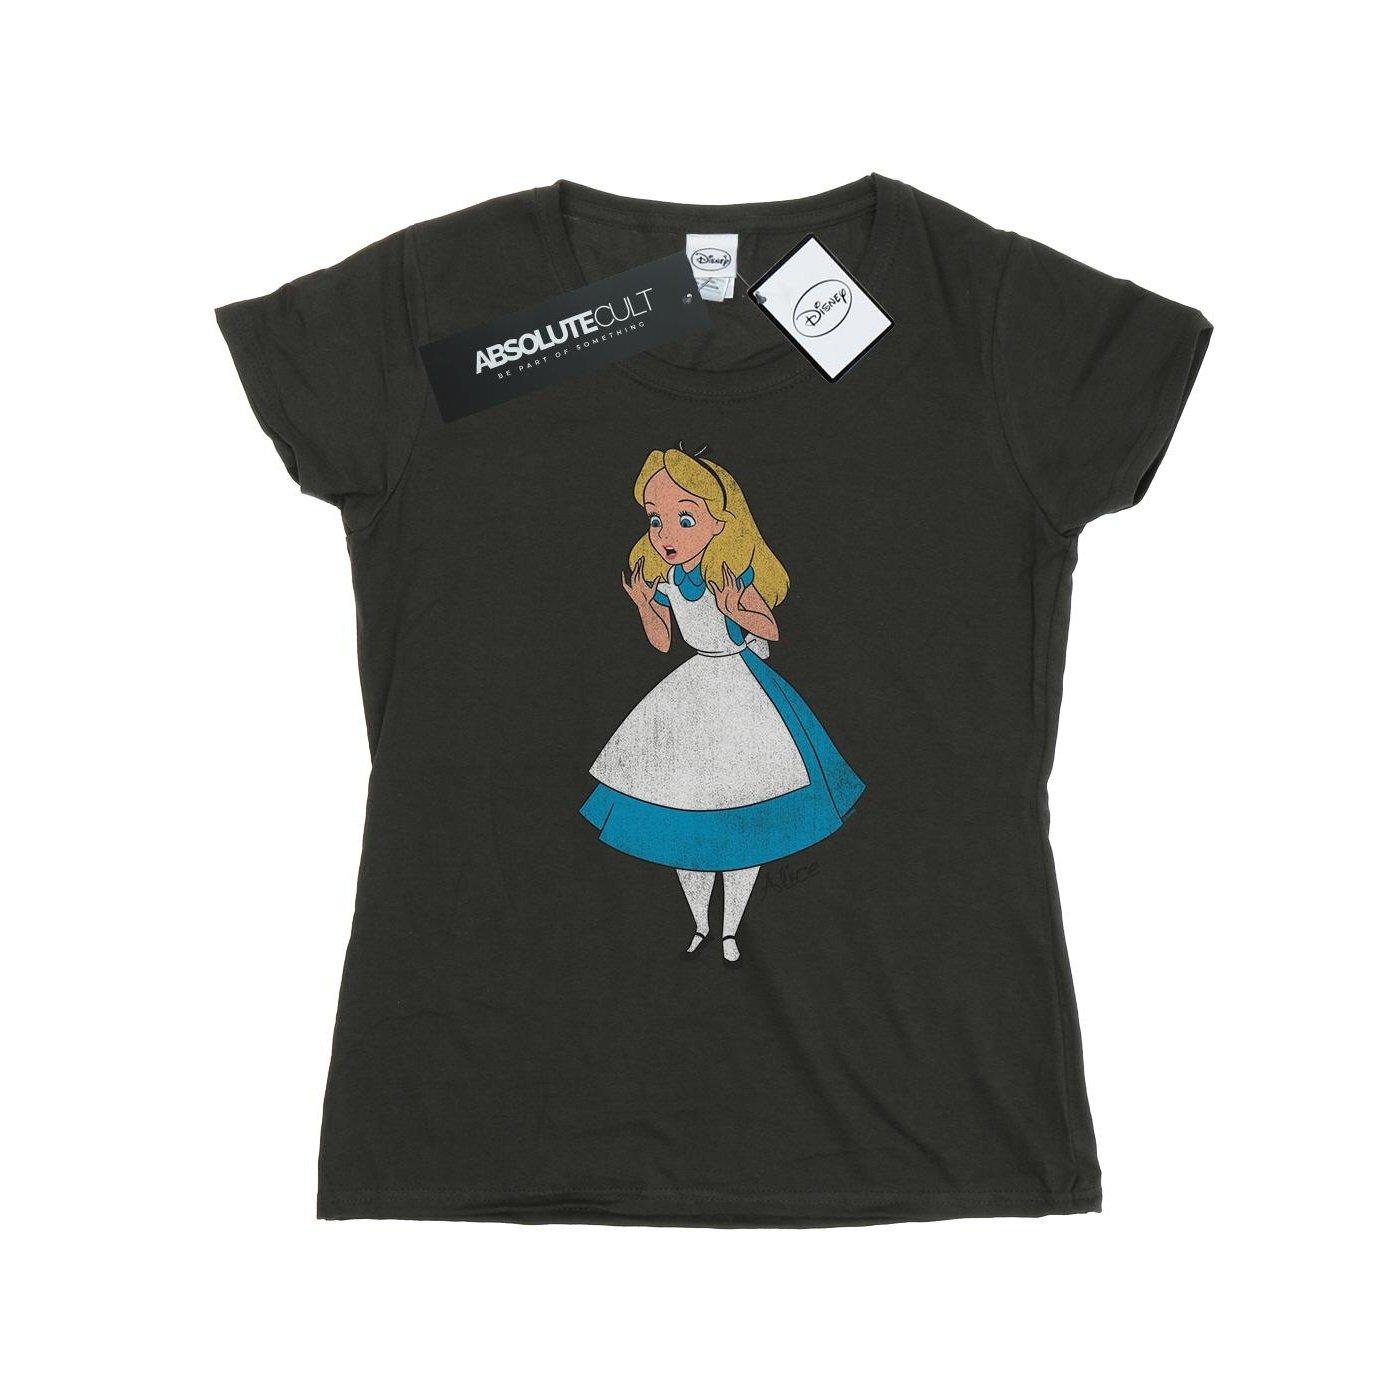 Tshirt Damen Taubengrau S von Alice in Wonderland